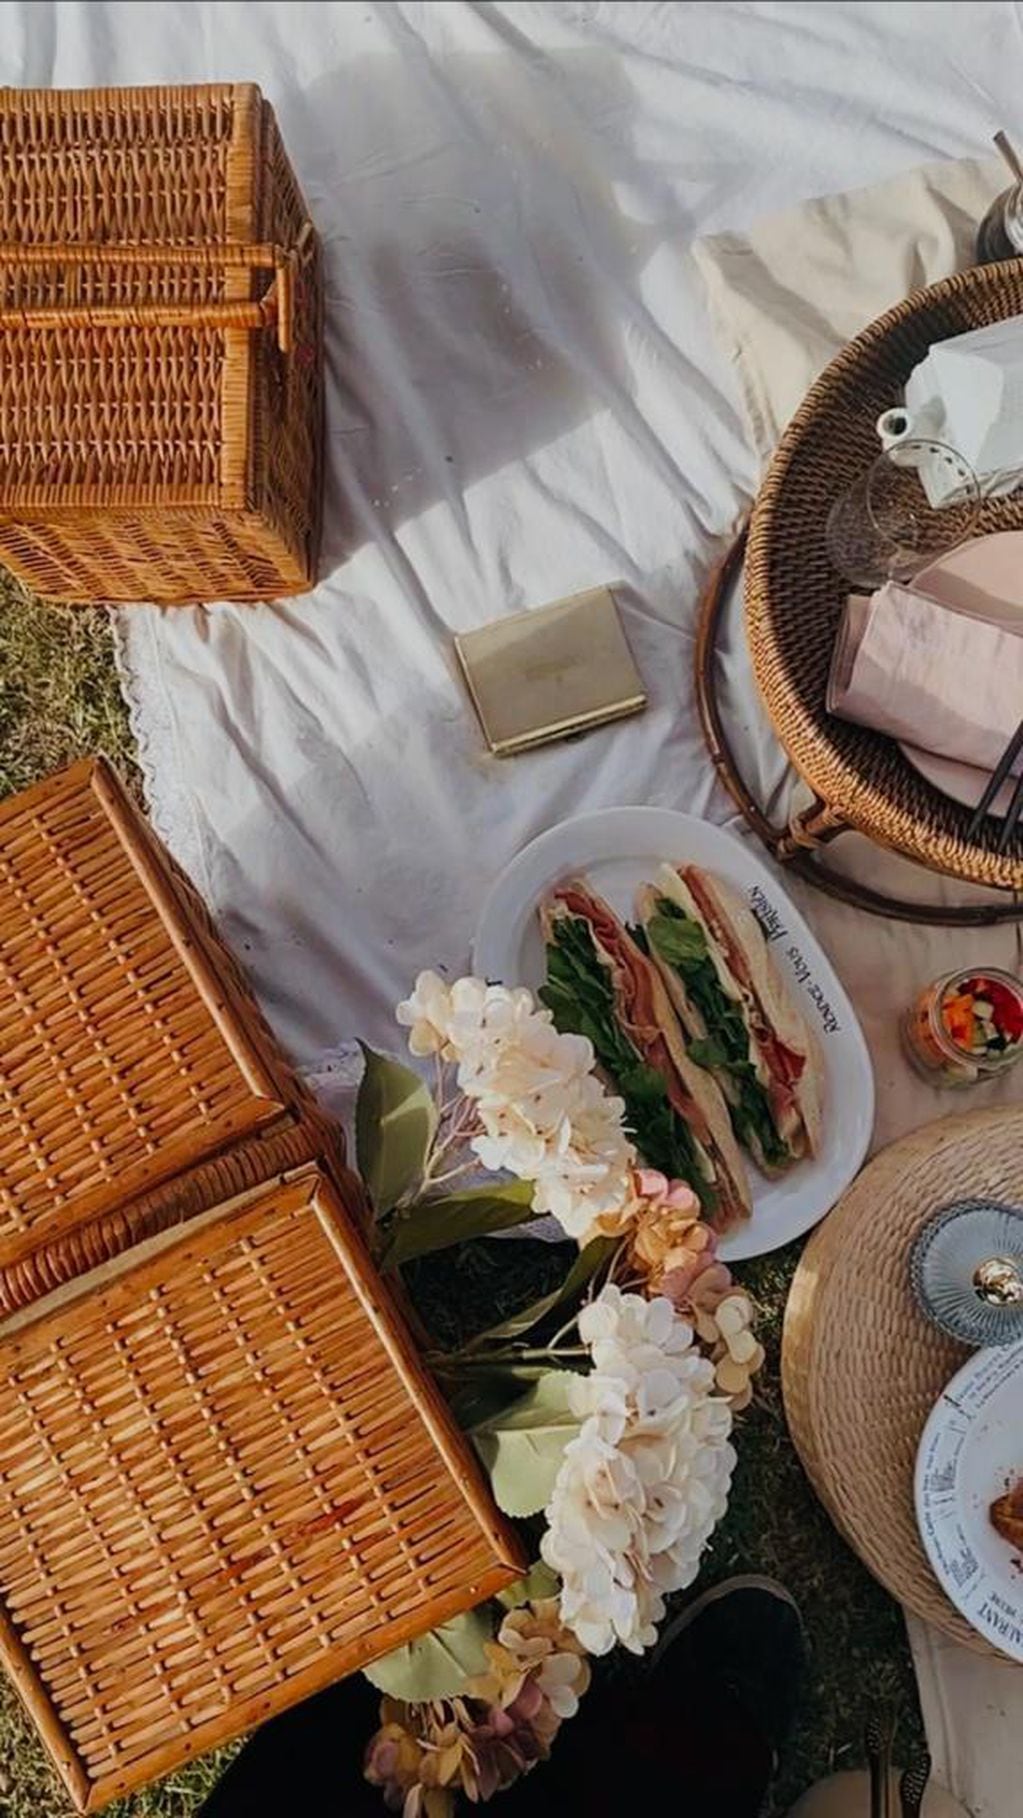 El picnic promete un viaje hacia París sin necesidad de pasajes.